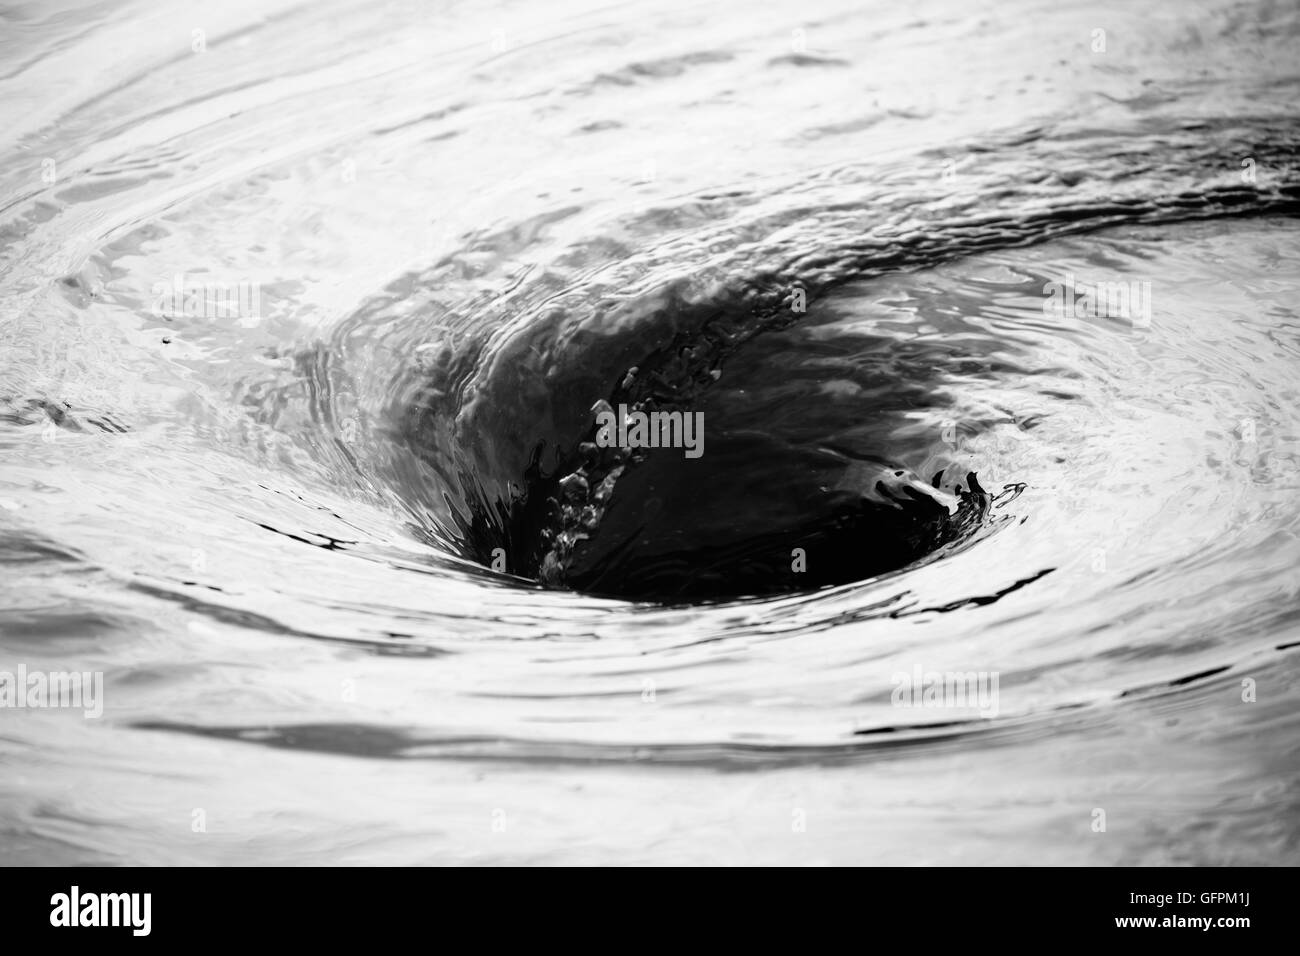 Whirlpool of water. Stock Photo